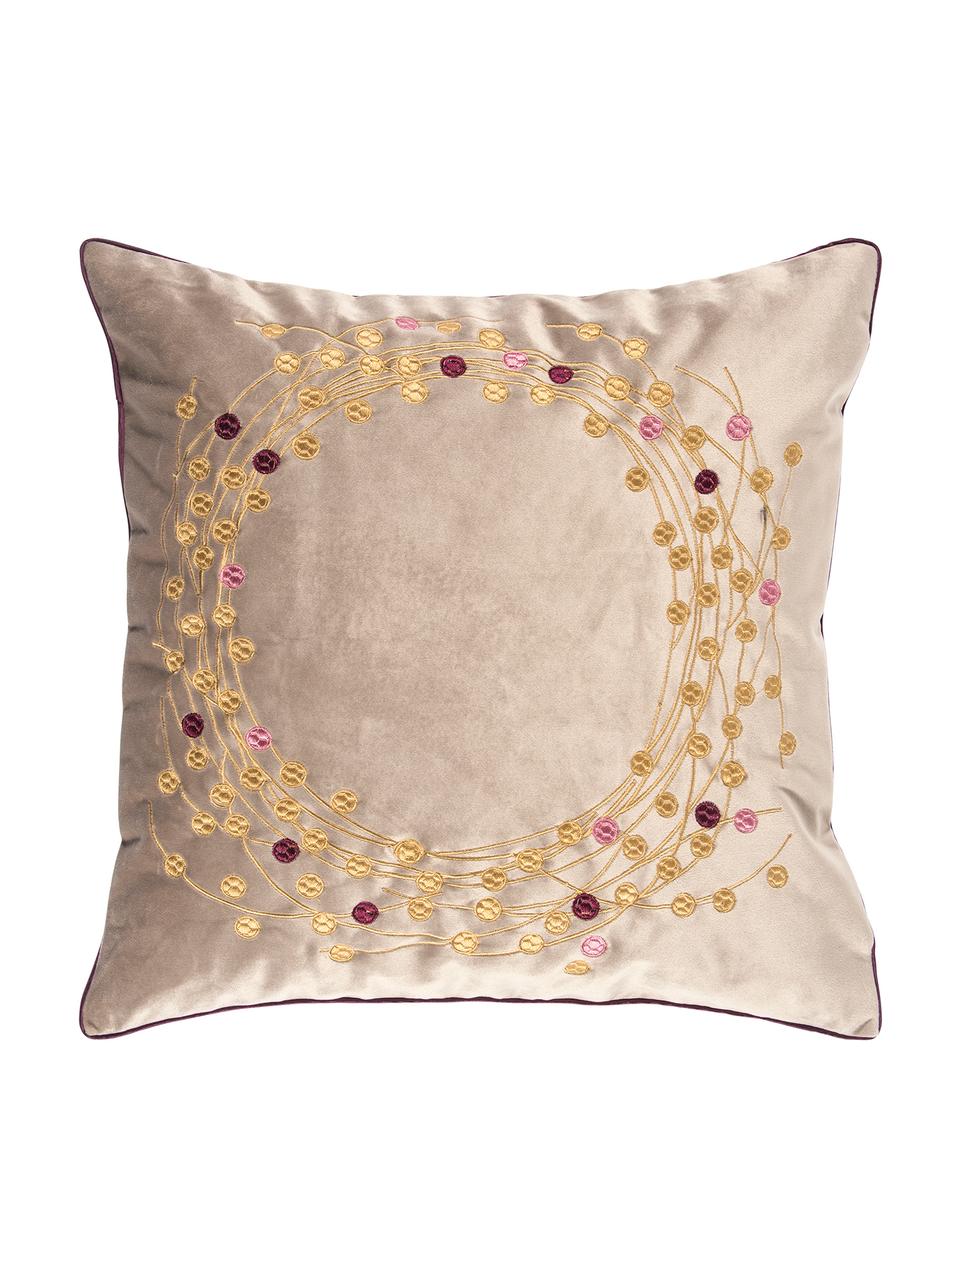 Fluwelen kussenhoes Circle met geborduurd wintermotief, Polyester fluweel, Zandkleurig, goudkleurig, 45 x 45 cm